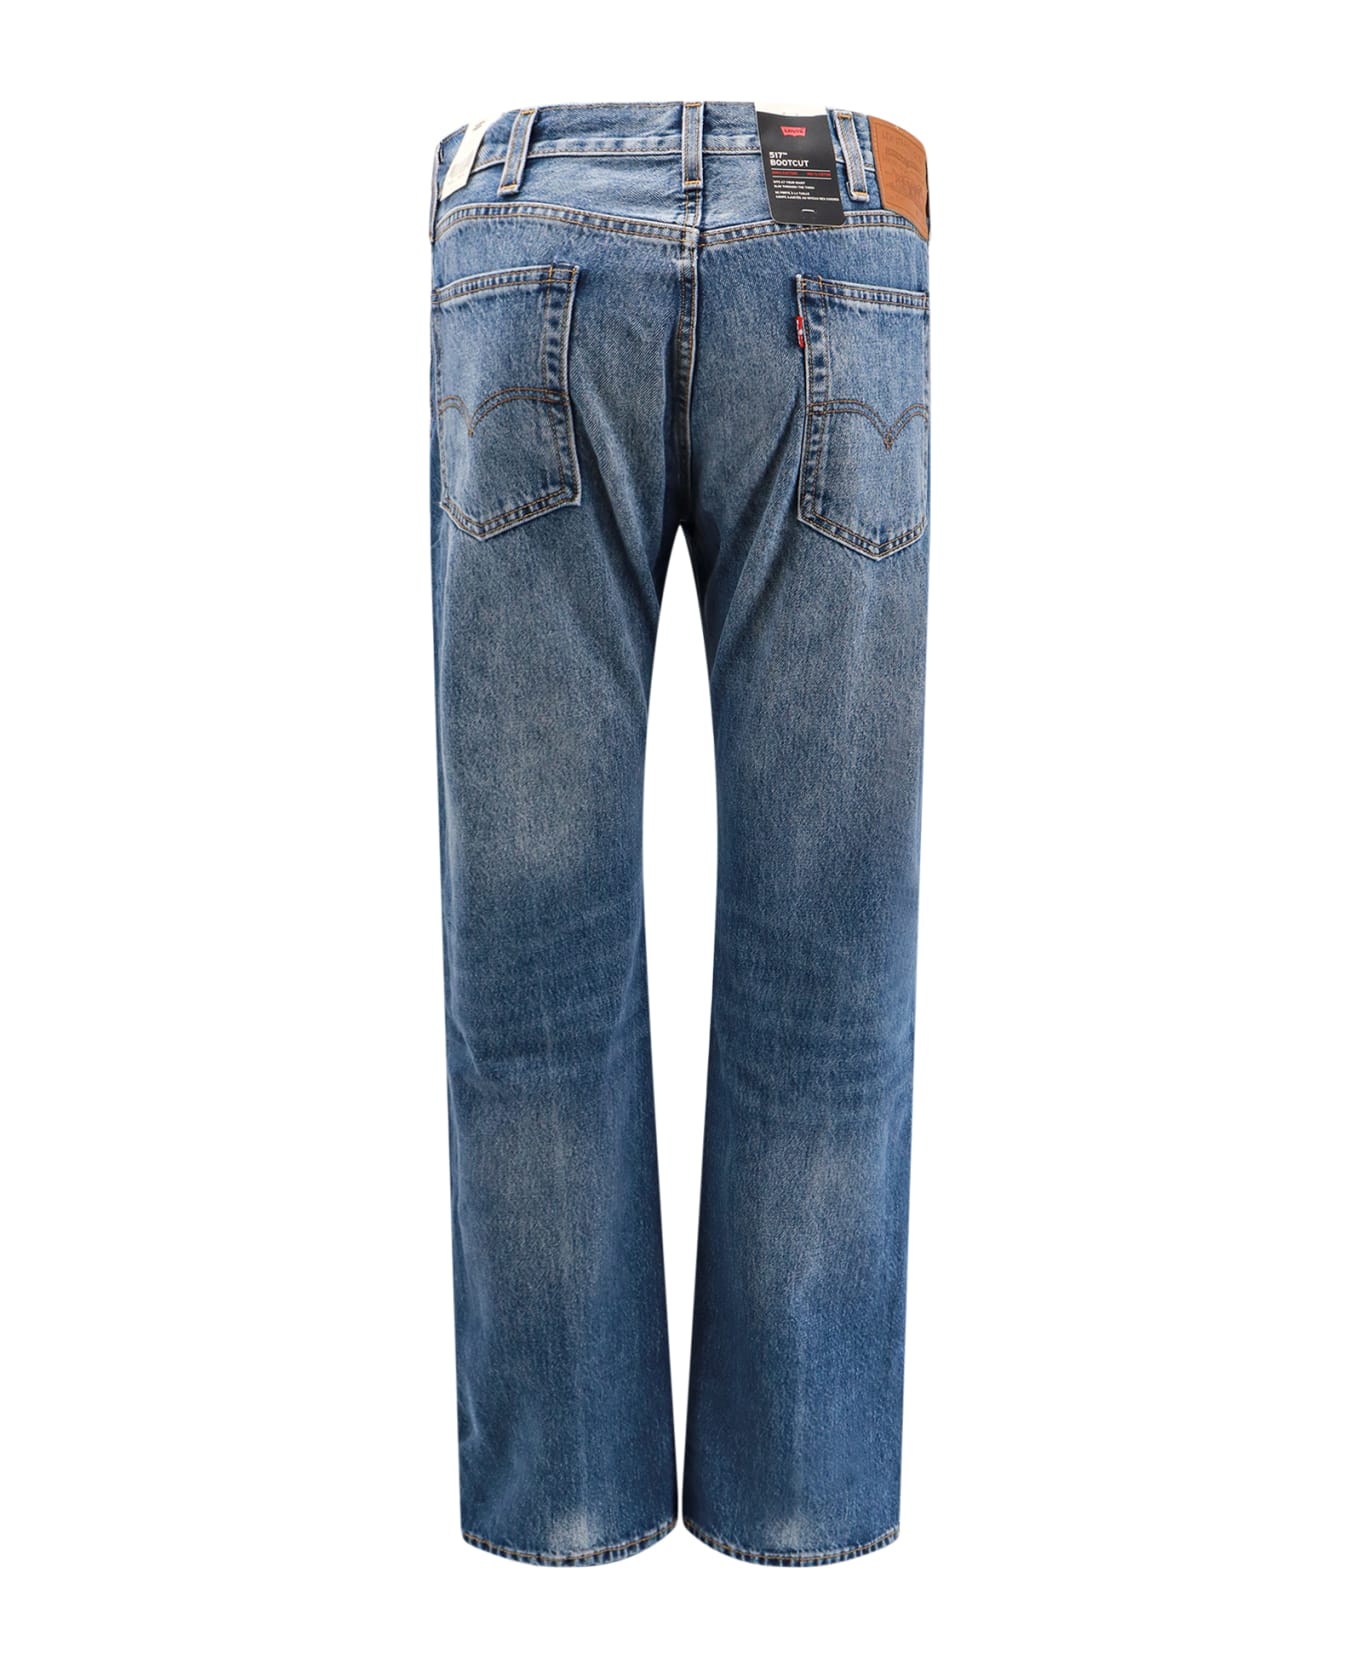 Levi's 517 Bootcut Jeans - Blue